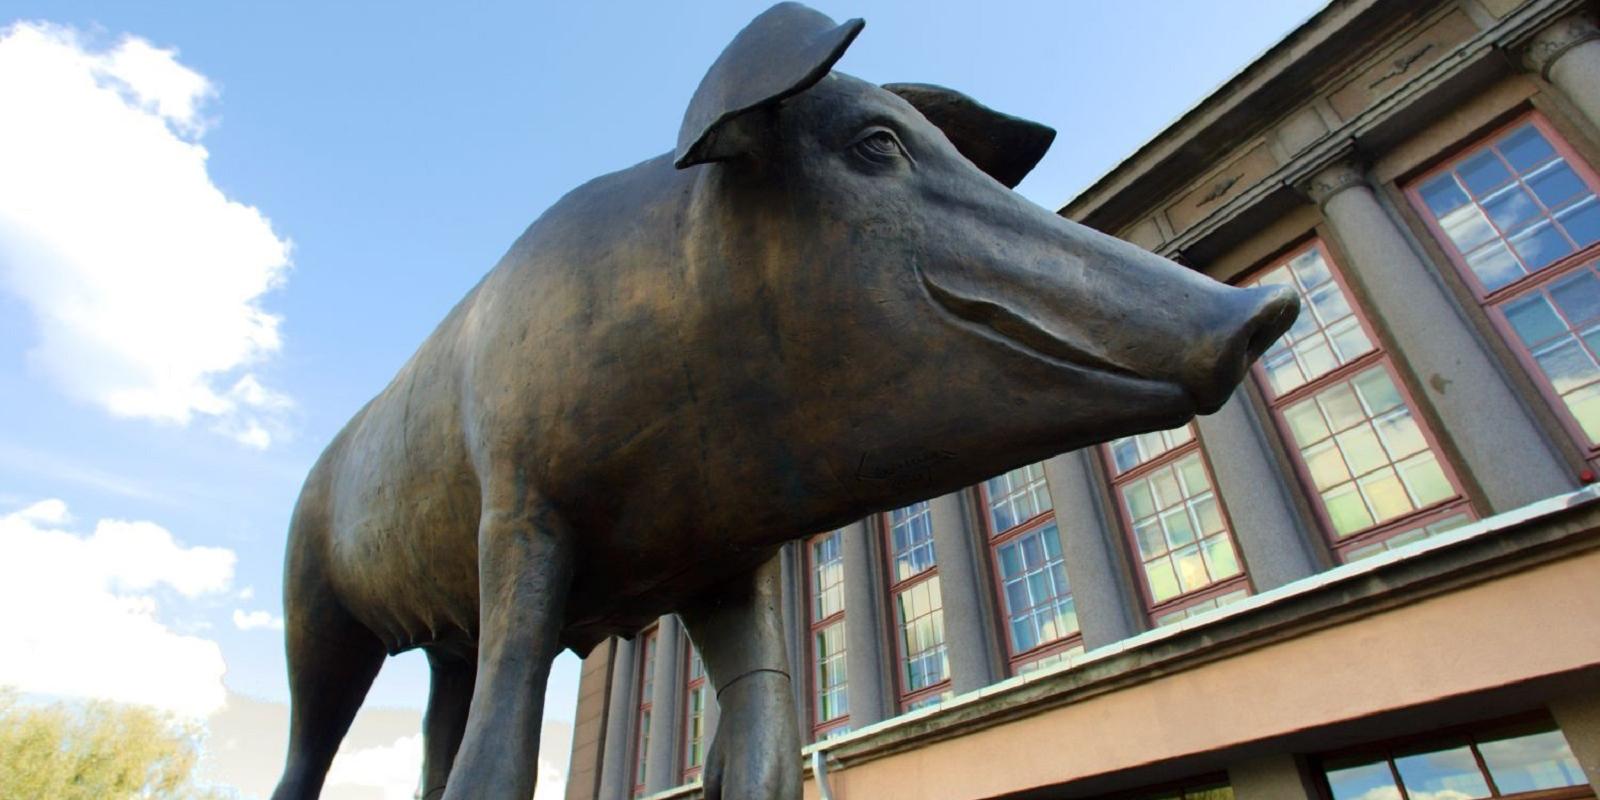 Sculpture Bronze Pig